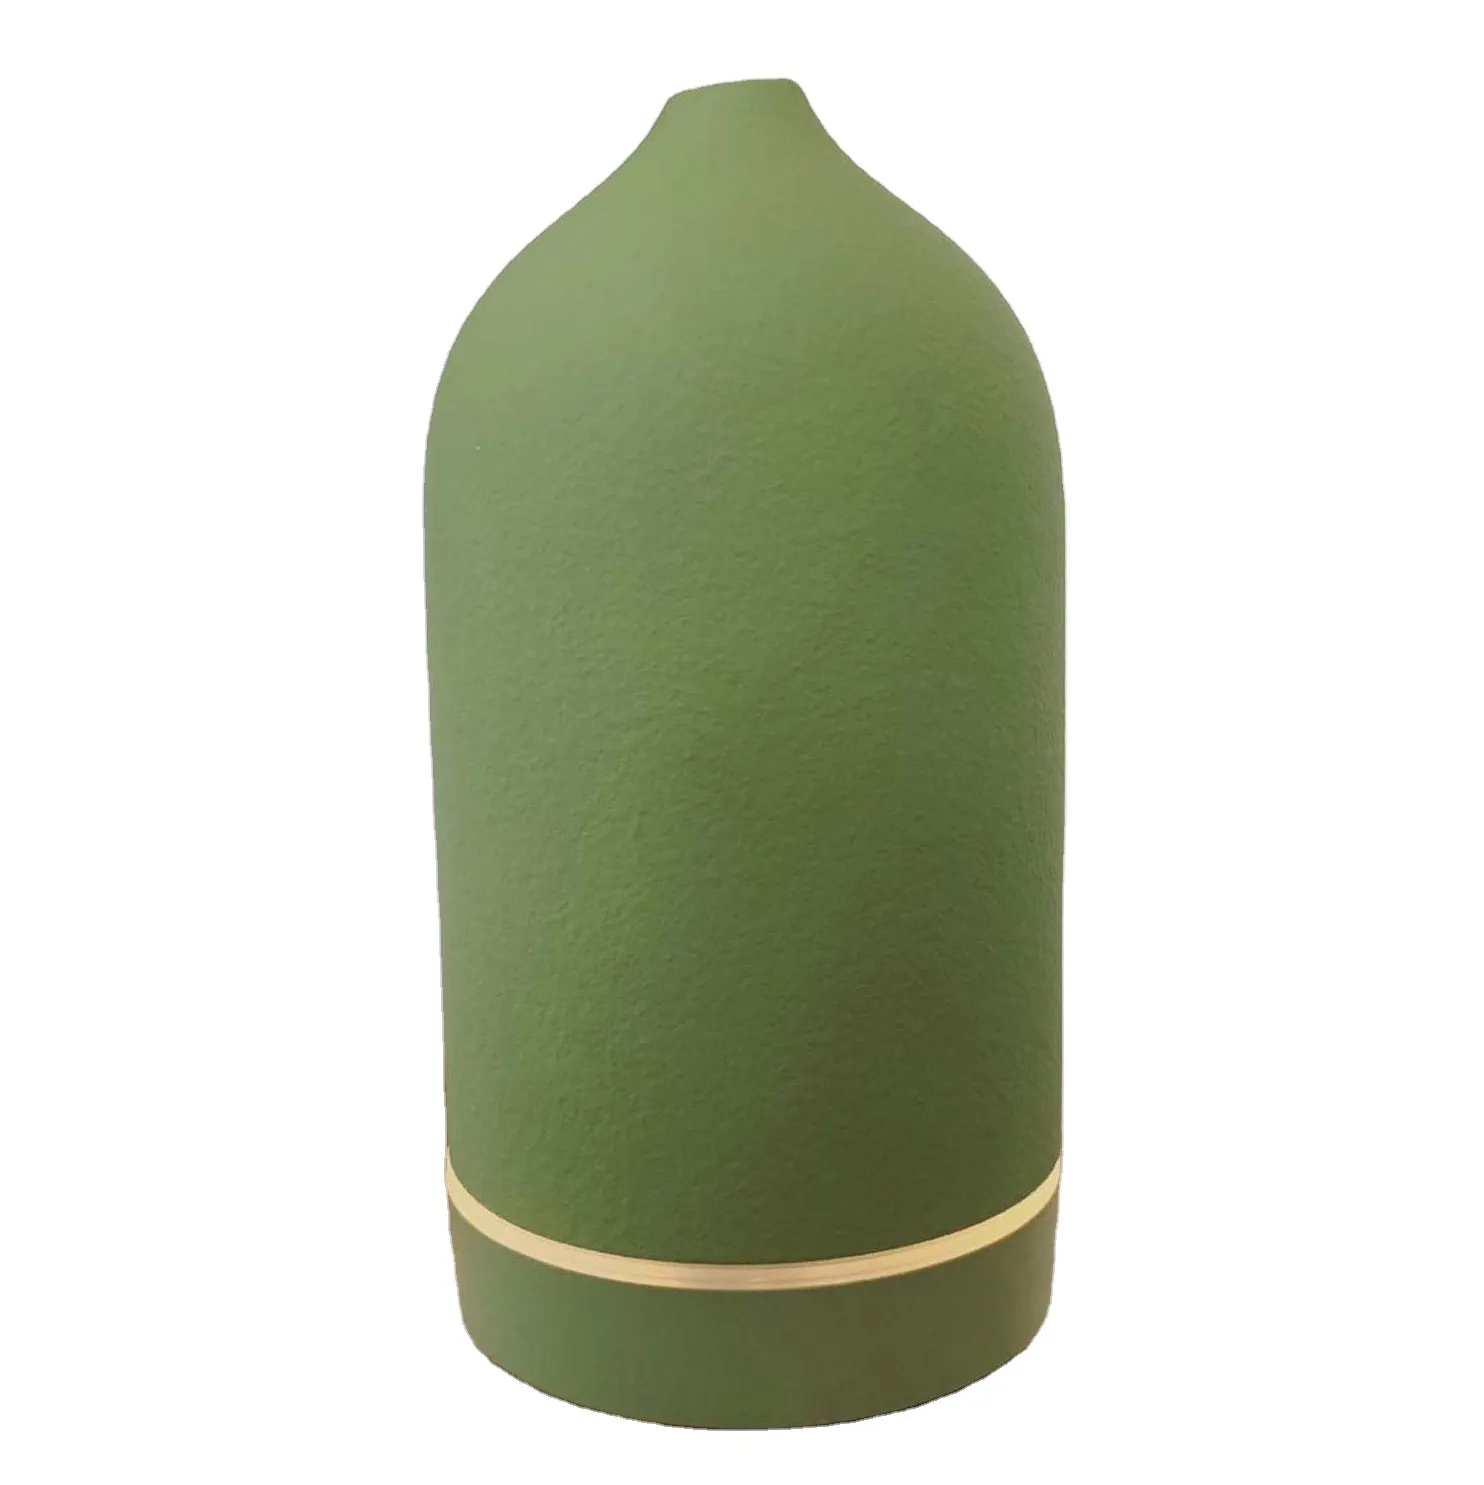 100ml Ceramic Spa Ultrasonic Aroma Diffuser Air Humidifier Essential Oil Diffuser Air Purifier